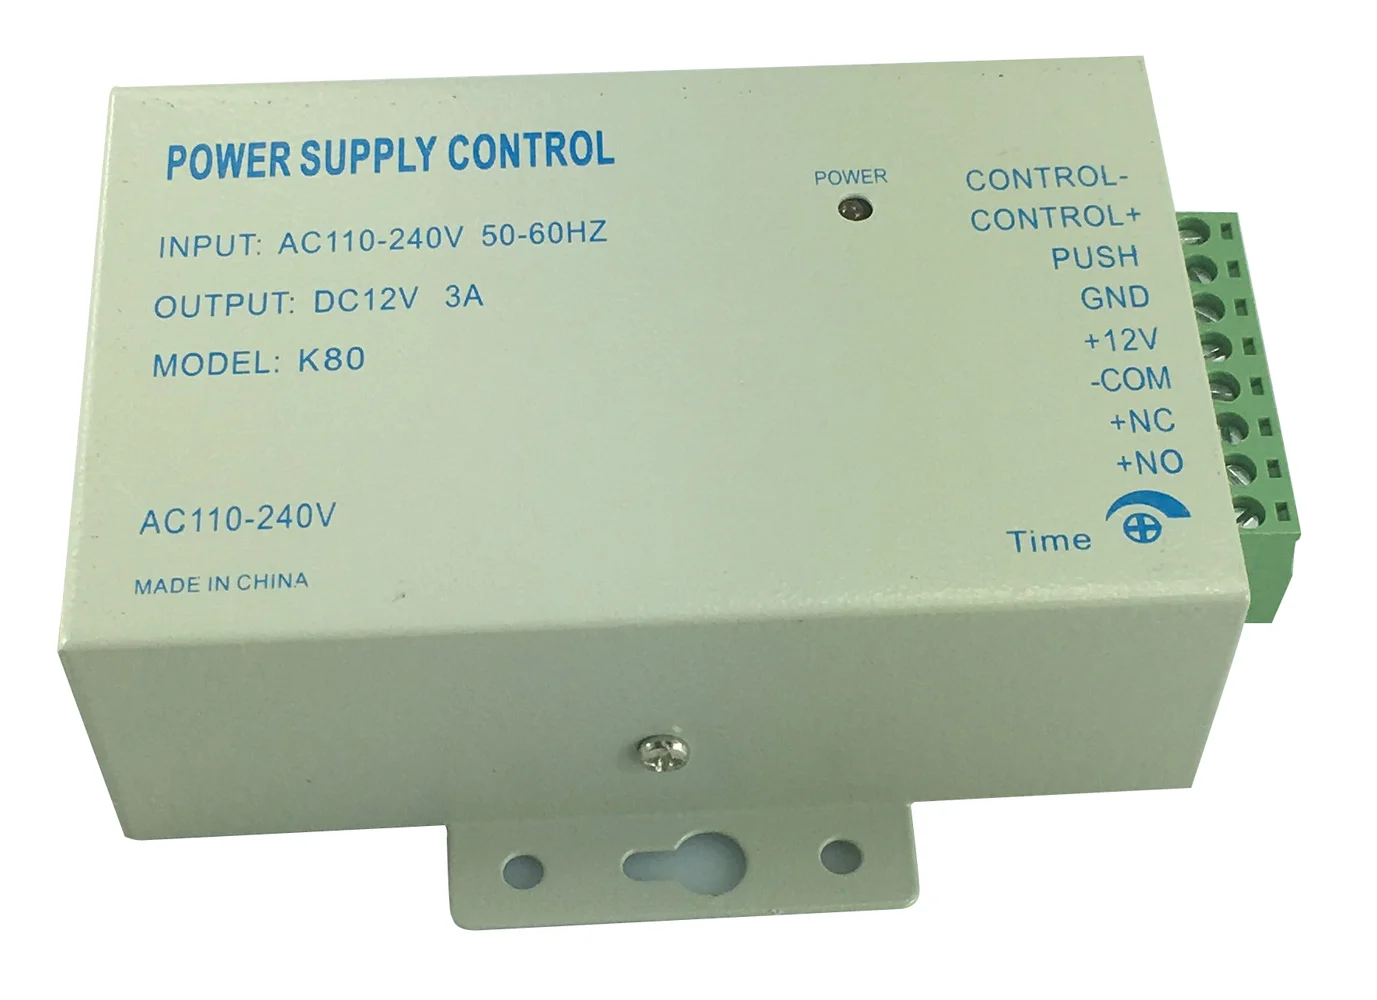 Power supply control. Управление Power Supply Control. Источник питания с контролем доступа dc12v/3. Access Power Supply.